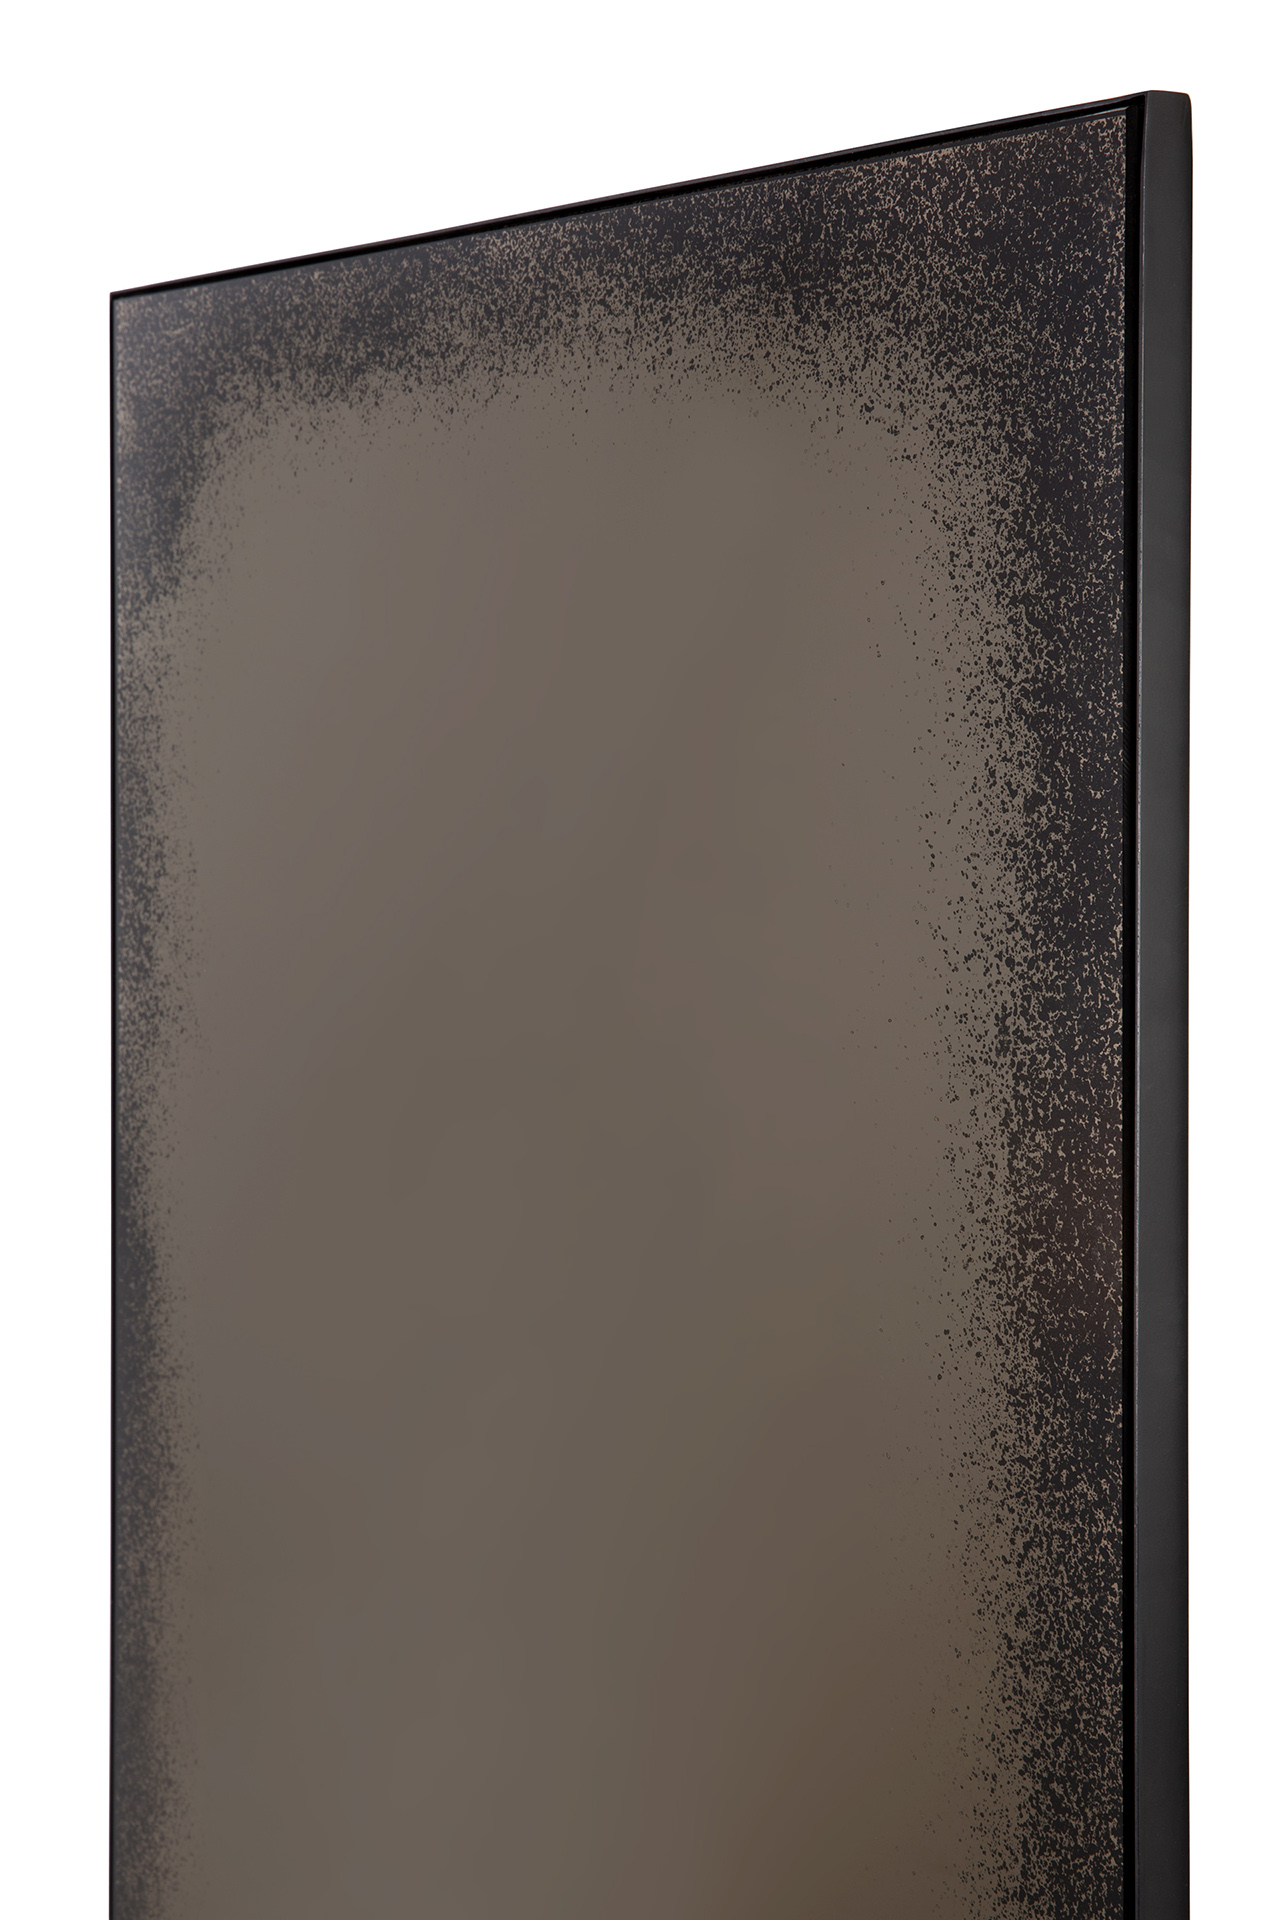 Ethnicraft - Aged Bronze vloerspiegel zwart metaal frame (71 x 3 x 244 cm)